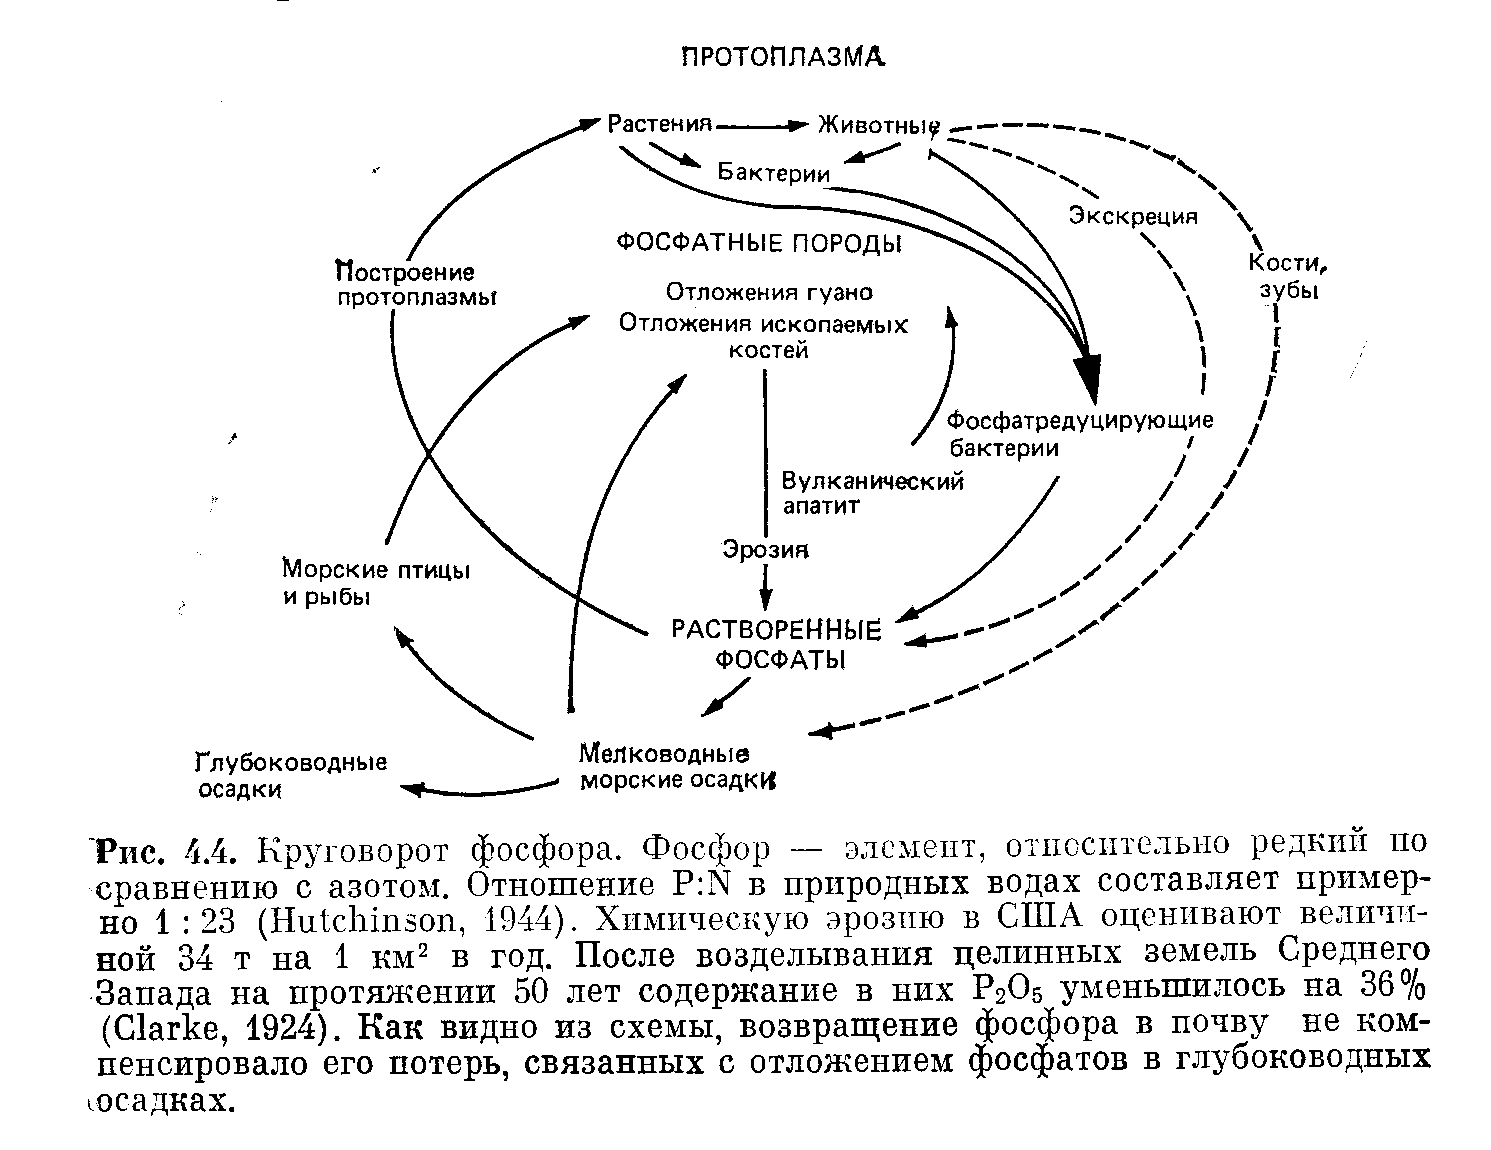 Кальций в биосфере. Схема круговорота биогеохимического цикла азота. Круговорот фосфора ( по п. Дювиньо и м. Тангу ). Схемы круговорота углерода, азота, фосфора. Круговорот азота кислорода углерода.